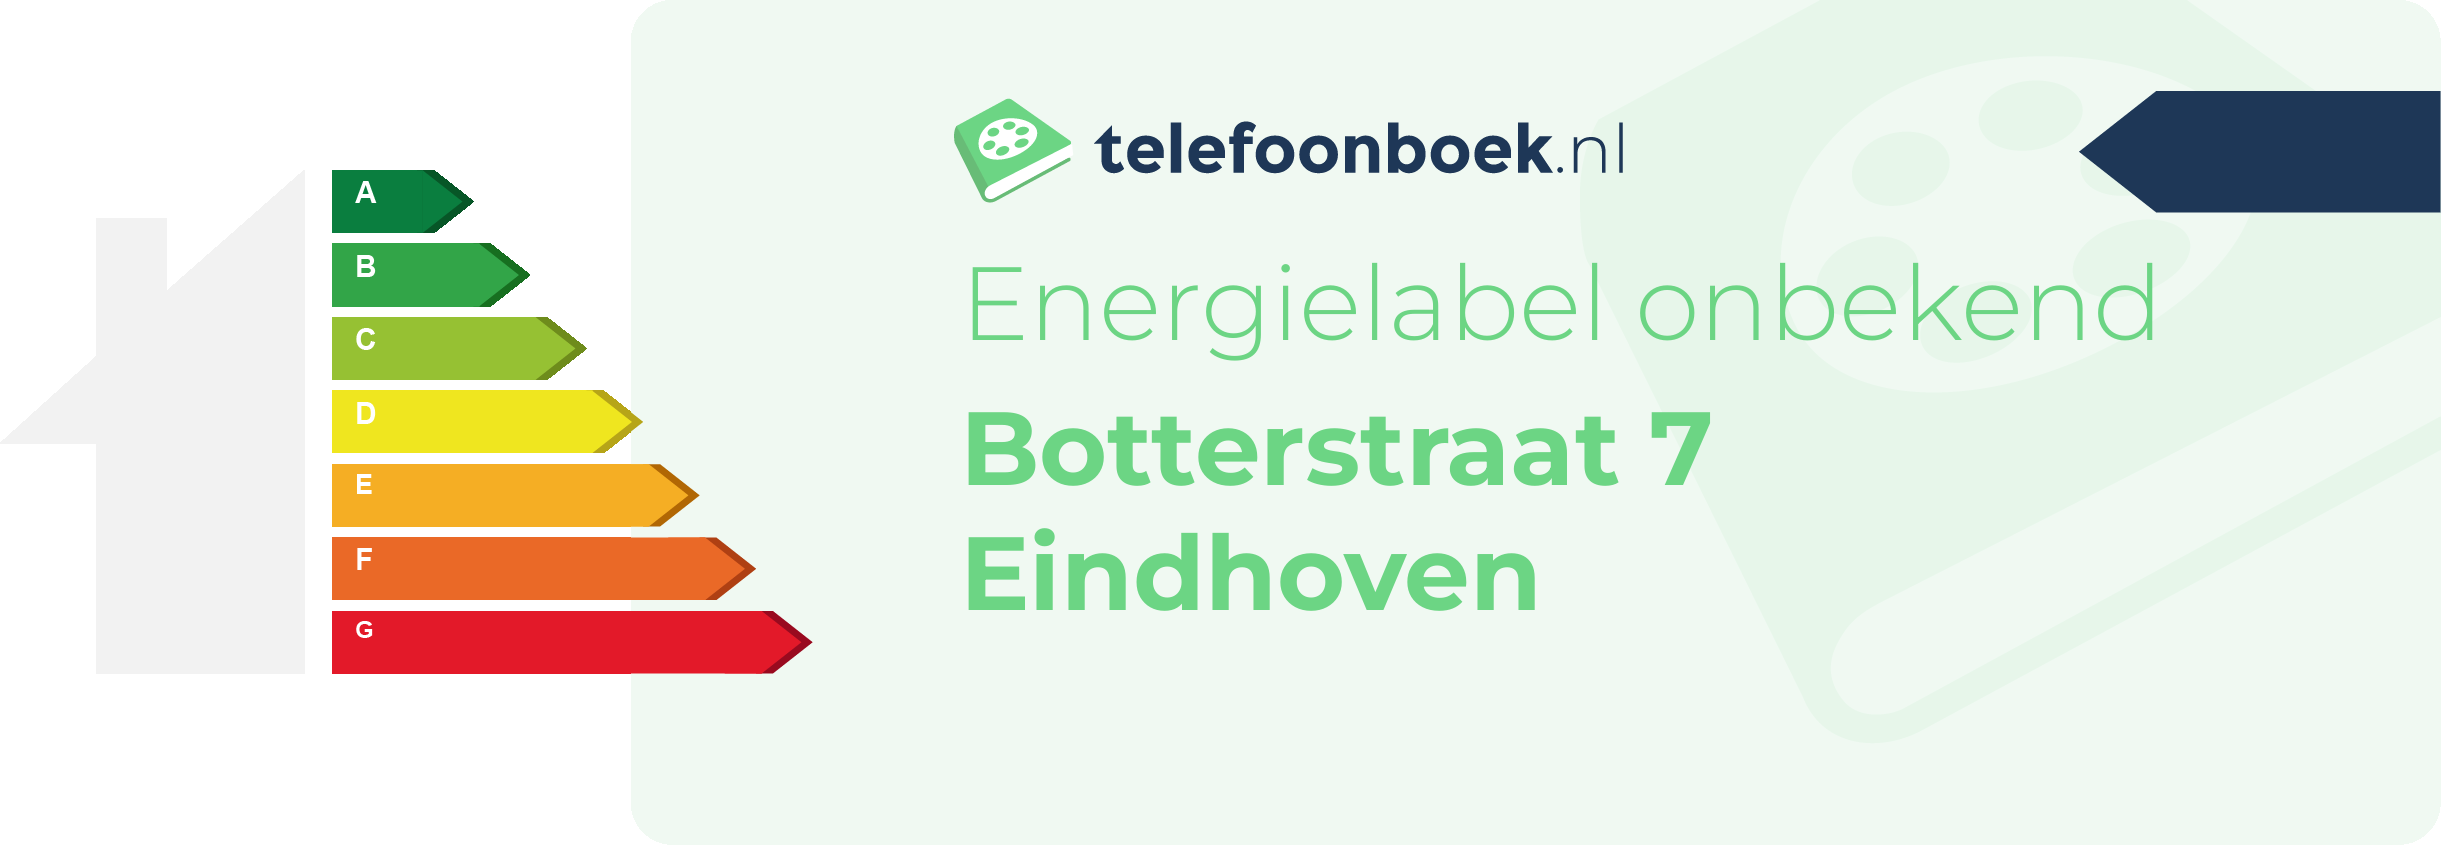 Energielabel Botterstraat 7 Eindhoven